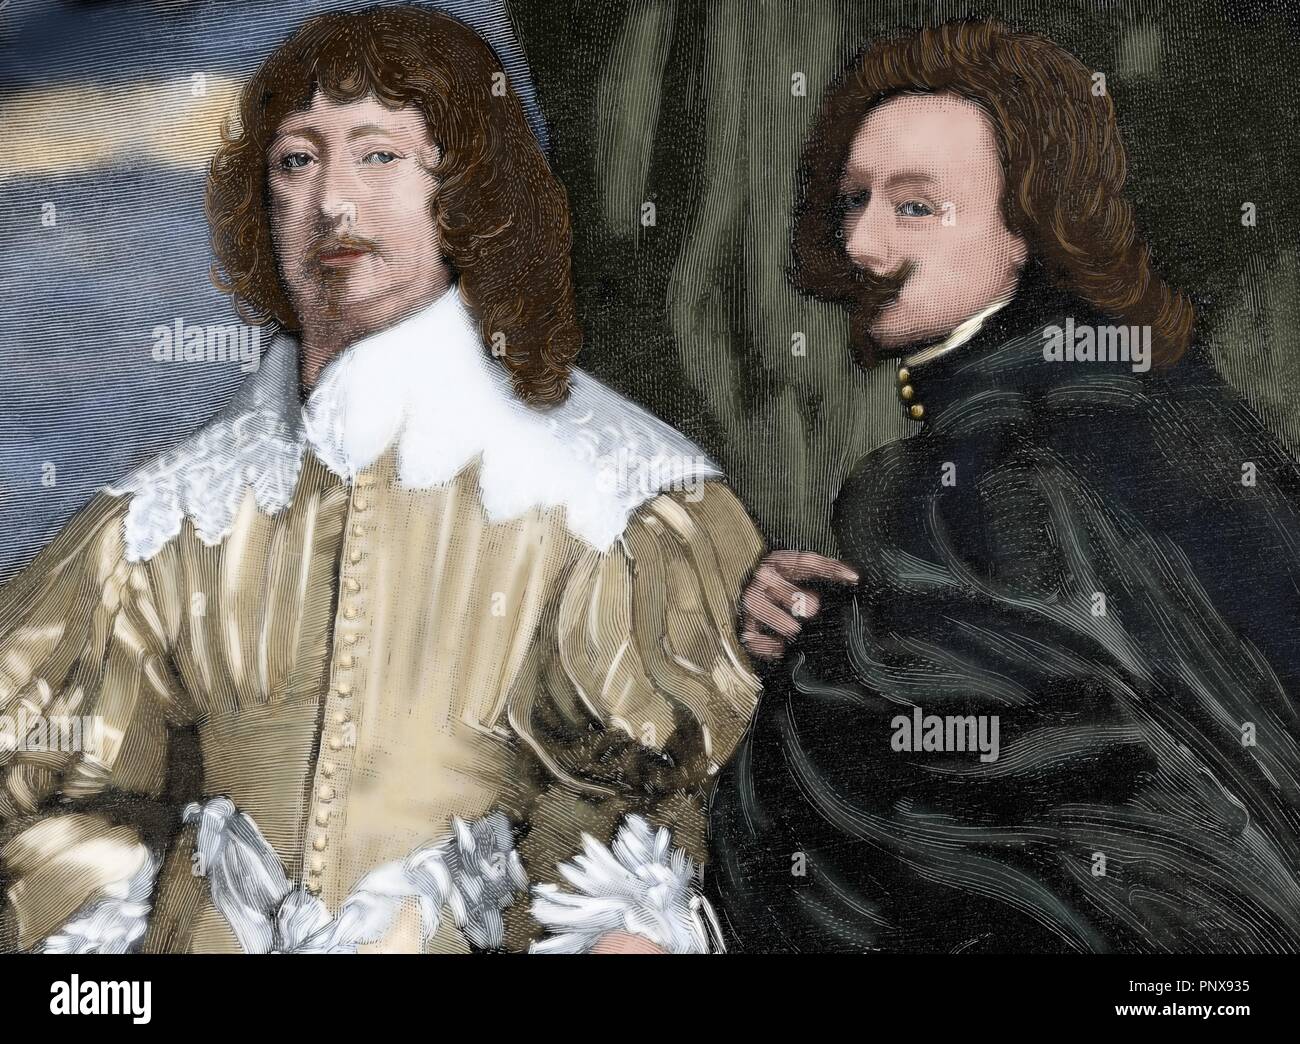 Peintre flamand Anthony Van Dyck (1599-1641) et homme politique anglais Lord John Digby (1580-1653), 1 Comte de Bristol. Gravure d'après une peinture de Van Dyck. L'illustration espagnole et américaine, 1884. Gravure en couleur. Banque D'Images